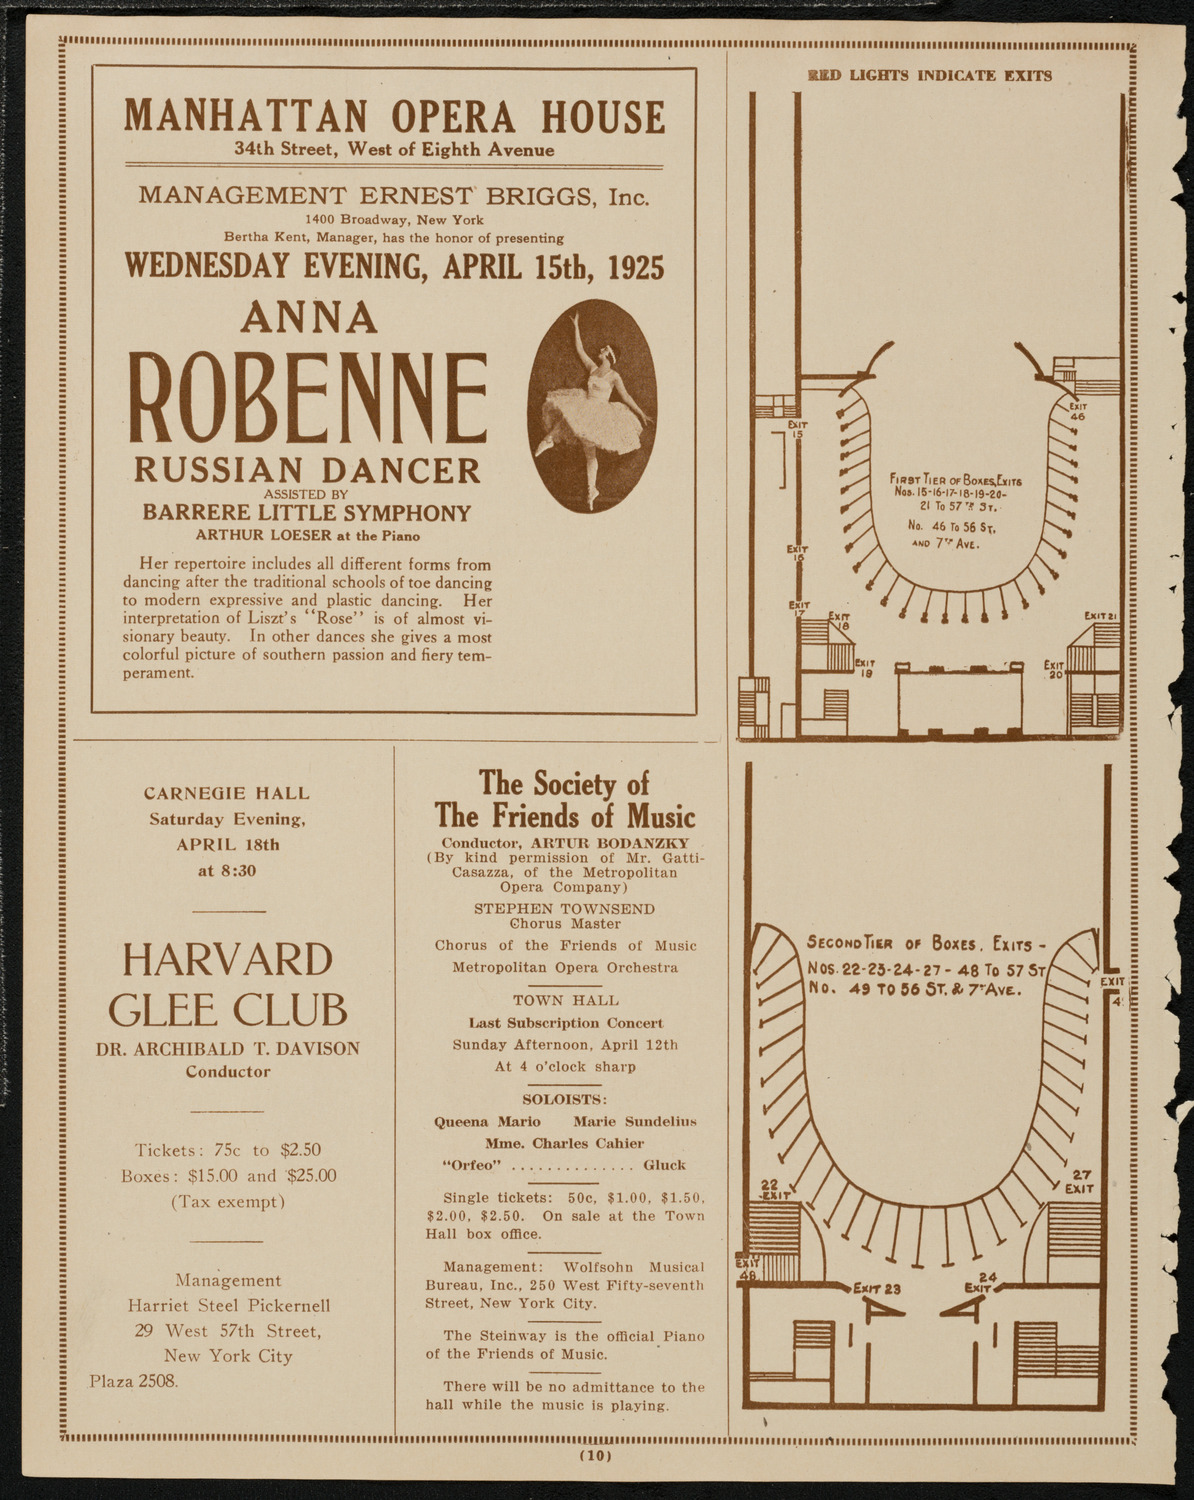 Boston Symphony Orchestra, April 11, 1925, program page 10